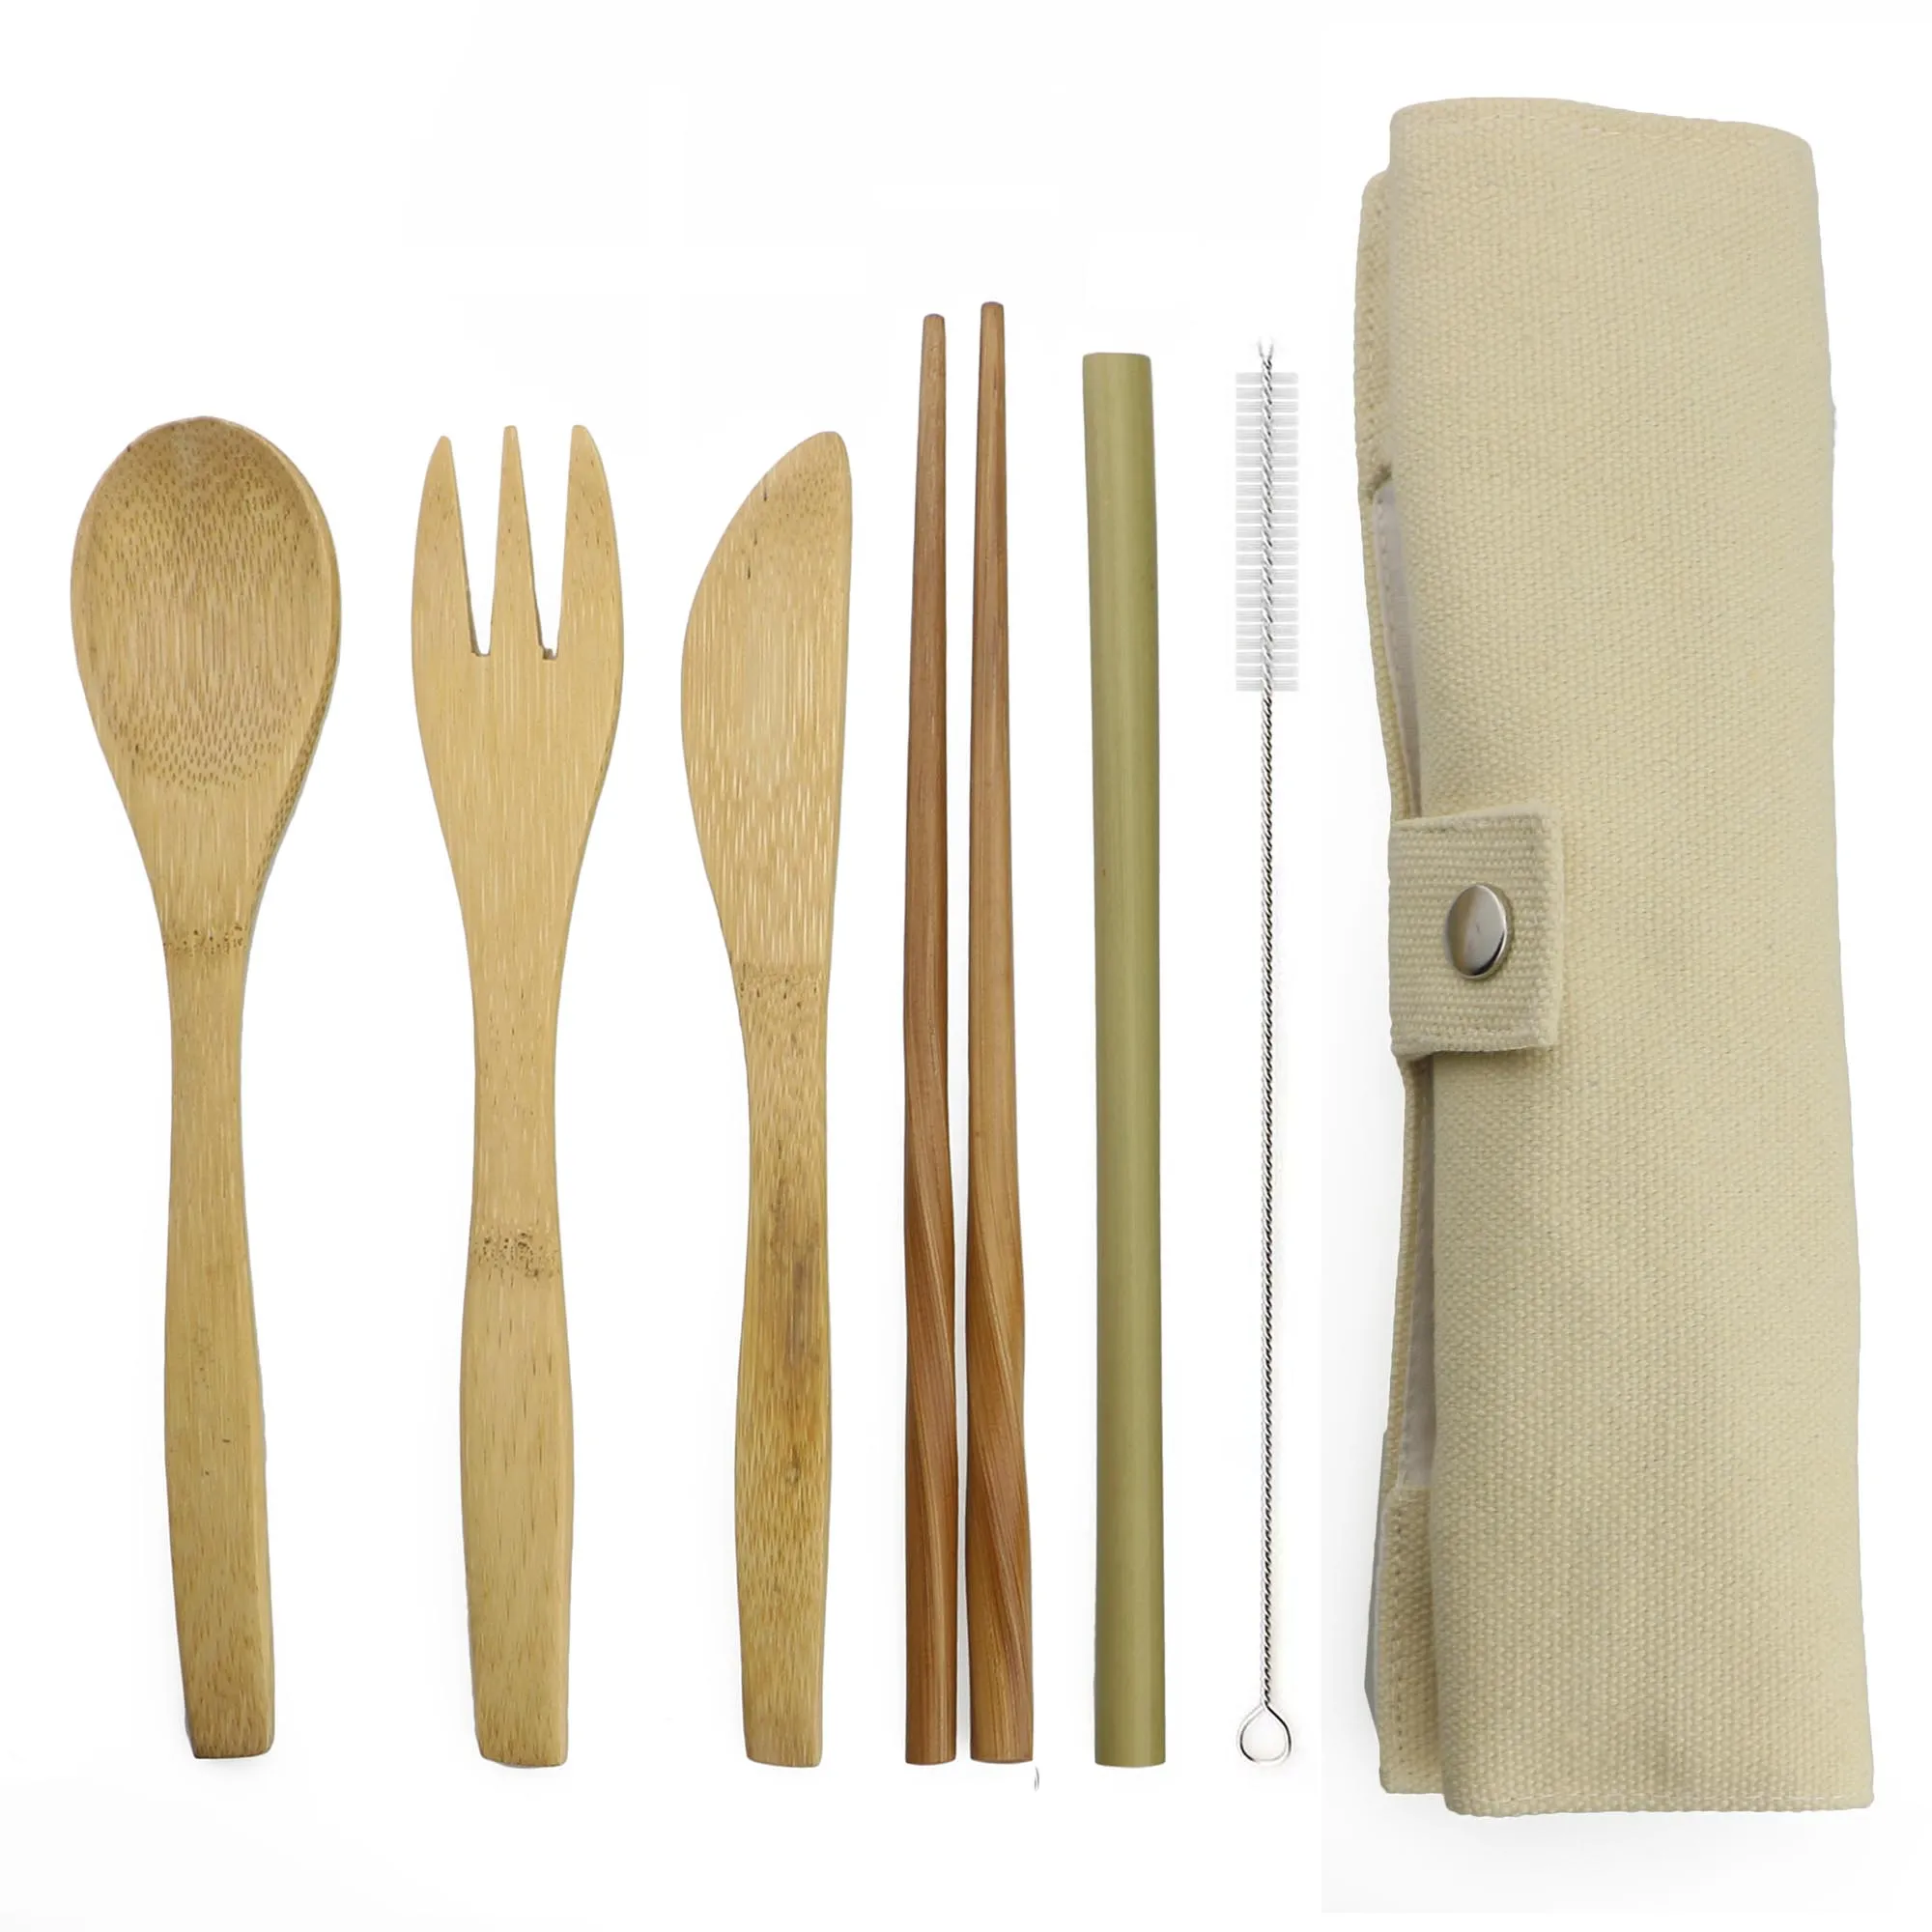 7 шт деревянный набор столовых приборов бамбуковая соломка набор с тканевой сумкой ножи вилка ложка палочки для еды путешествия оптом - Цвет: Beige